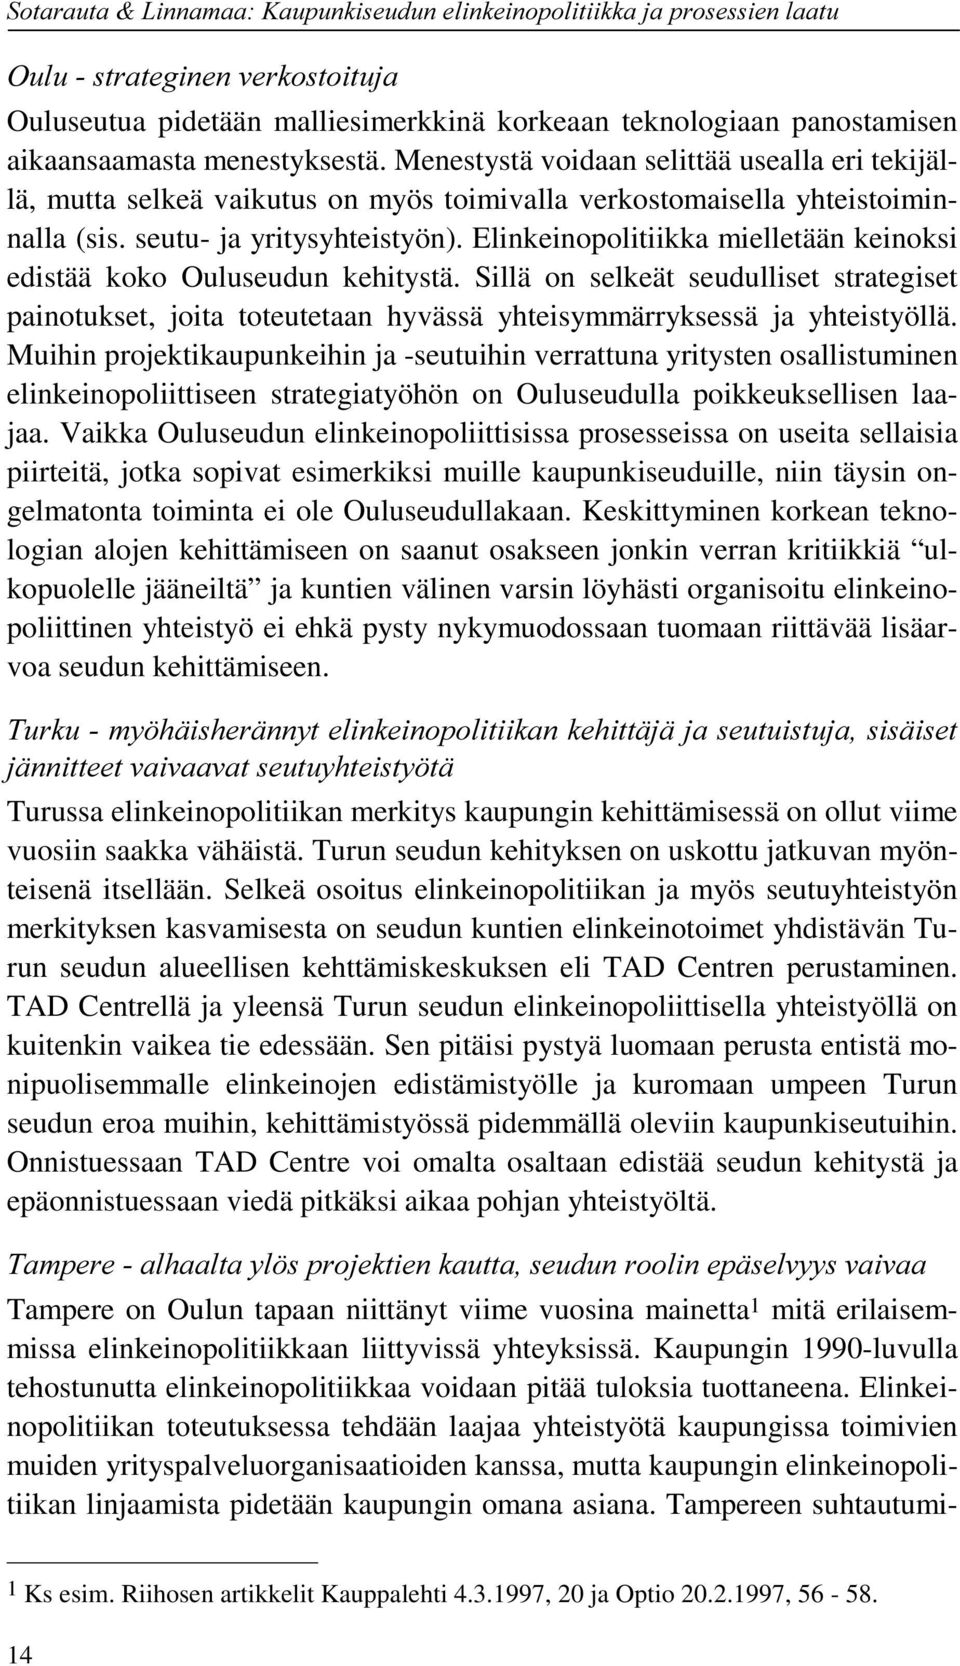 Elinkeinopolitiikka mielletään keinoksi edistää koko Ouluseudun kehitystä. Sillä on selkeät seudulliset strategiset painotukset, joita toteutetaan hyvässä yhteisymmärryksessä ja yhteistyöllä.